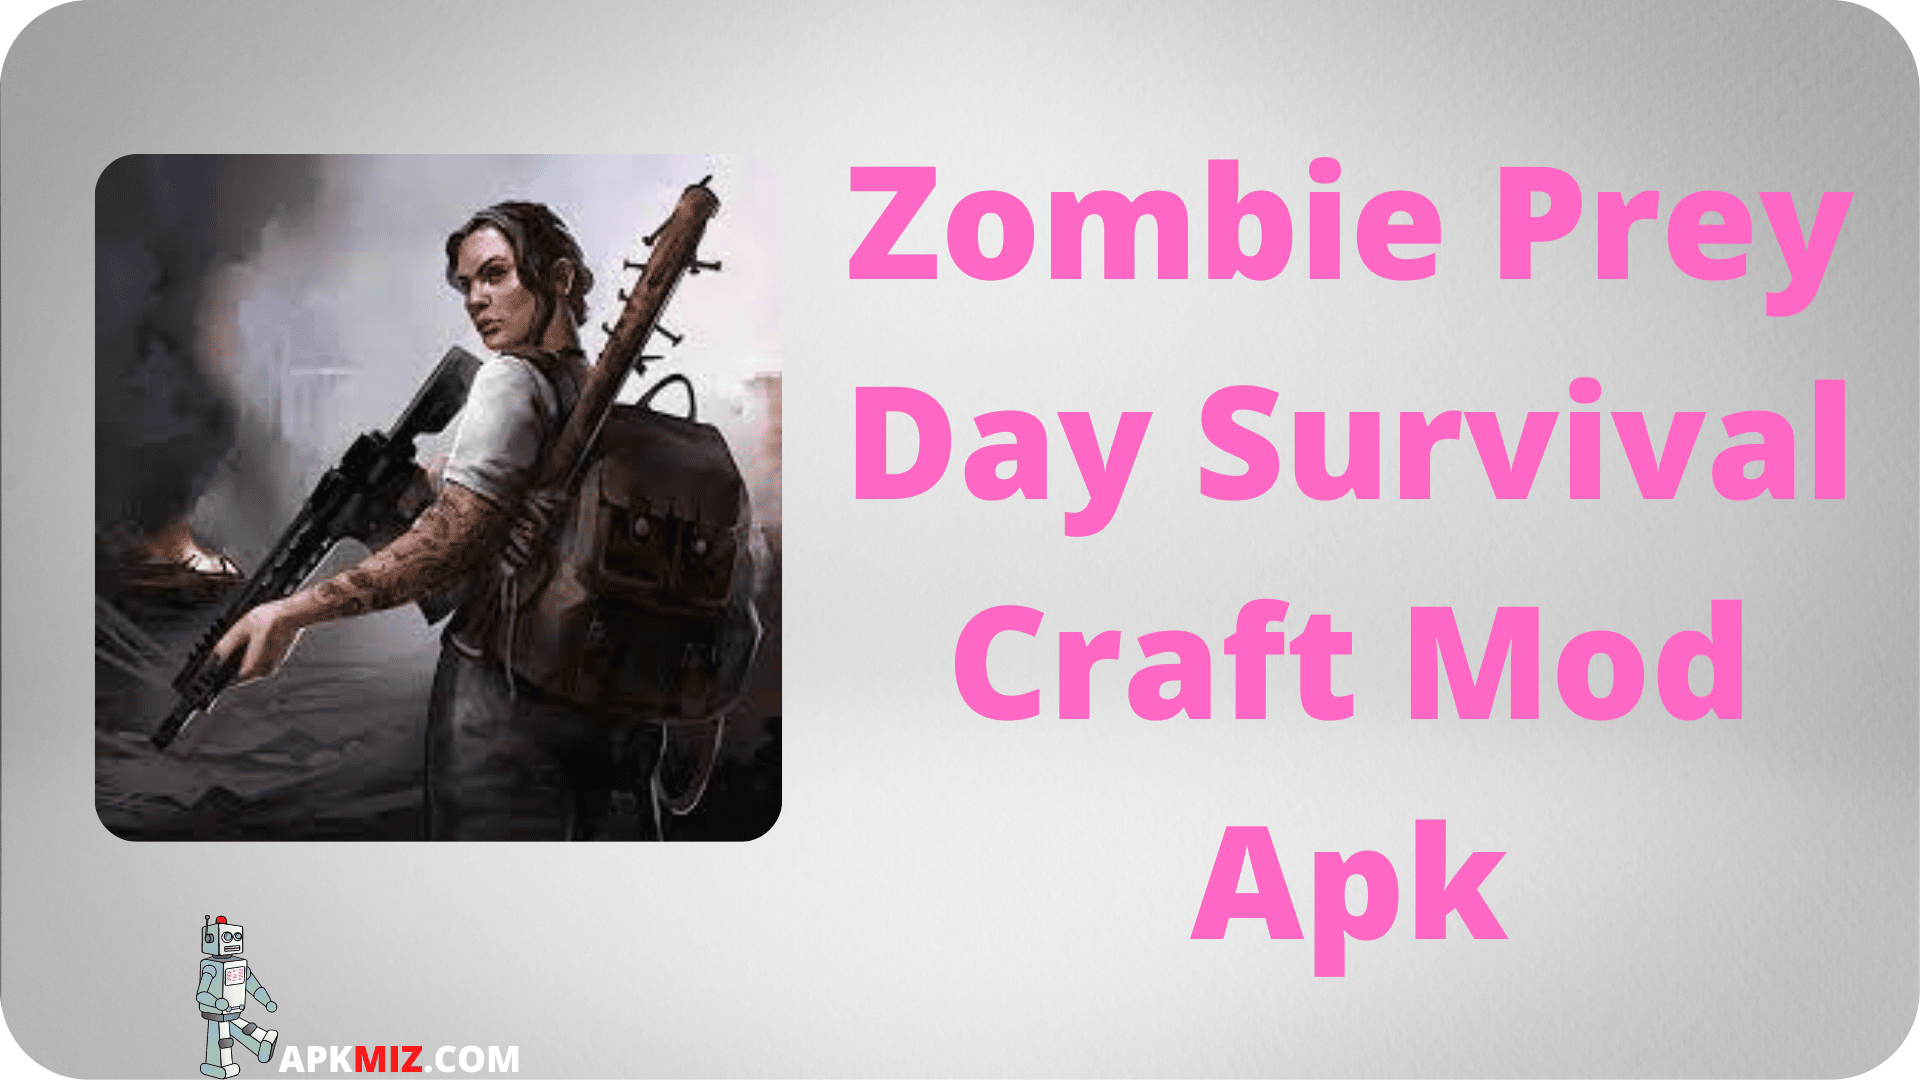 Zombie Prey Day Survival Craft Mod Apk